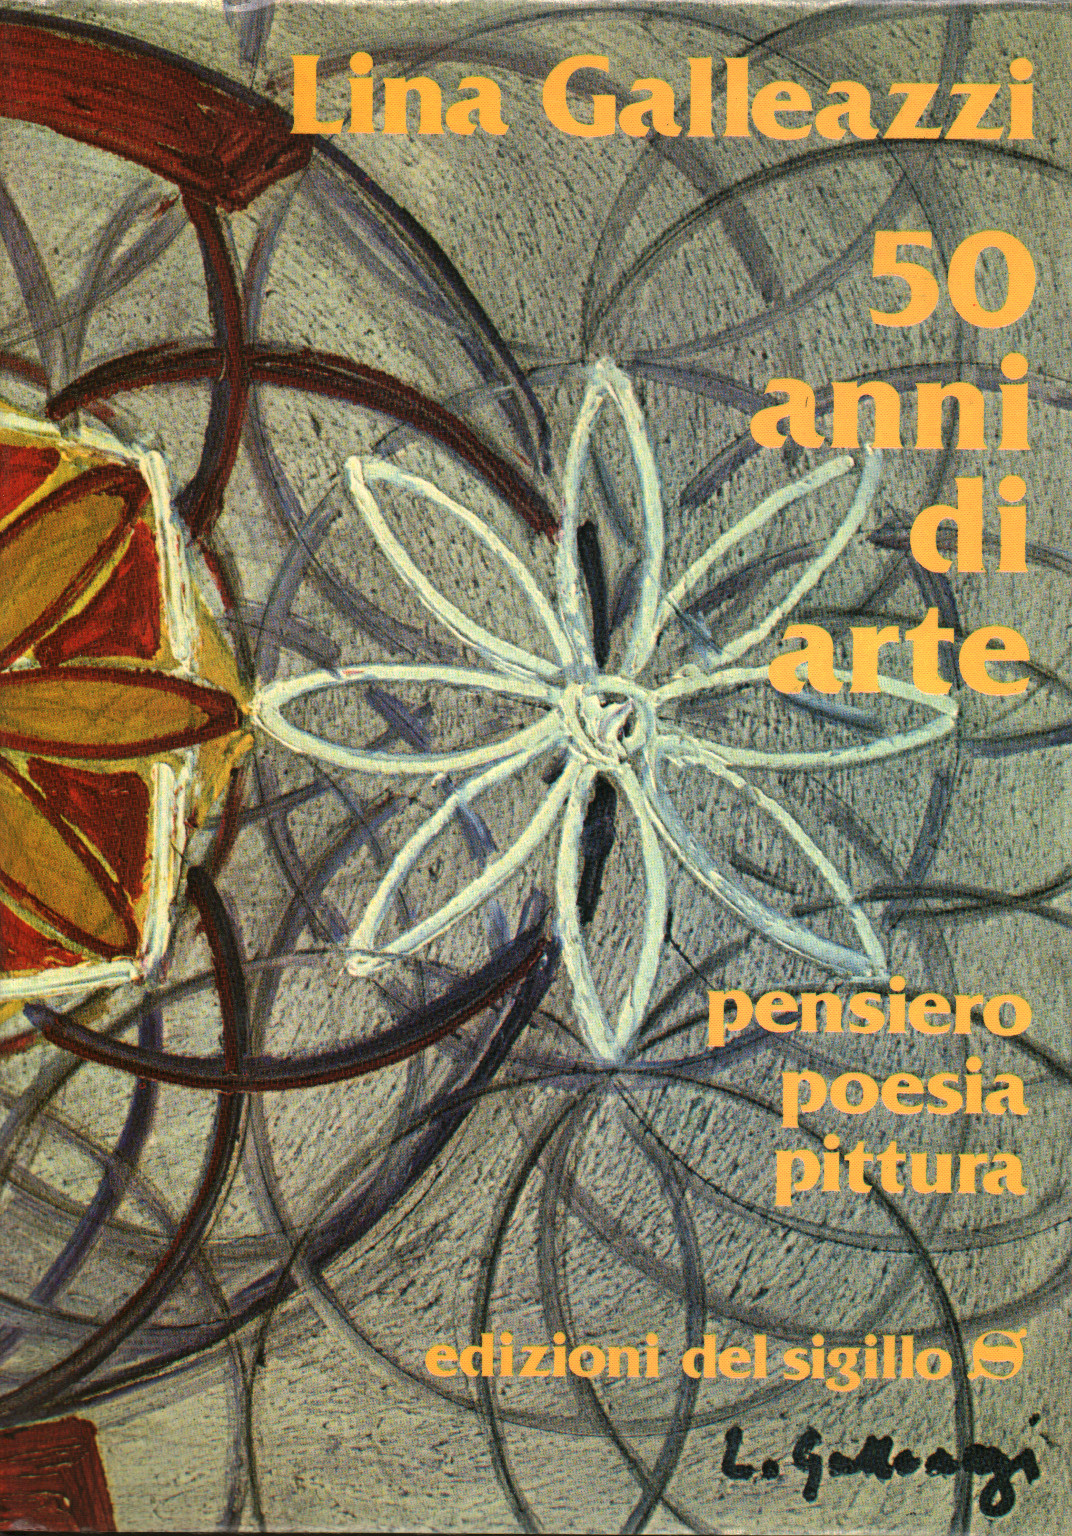 50 Años de arte, s.una.